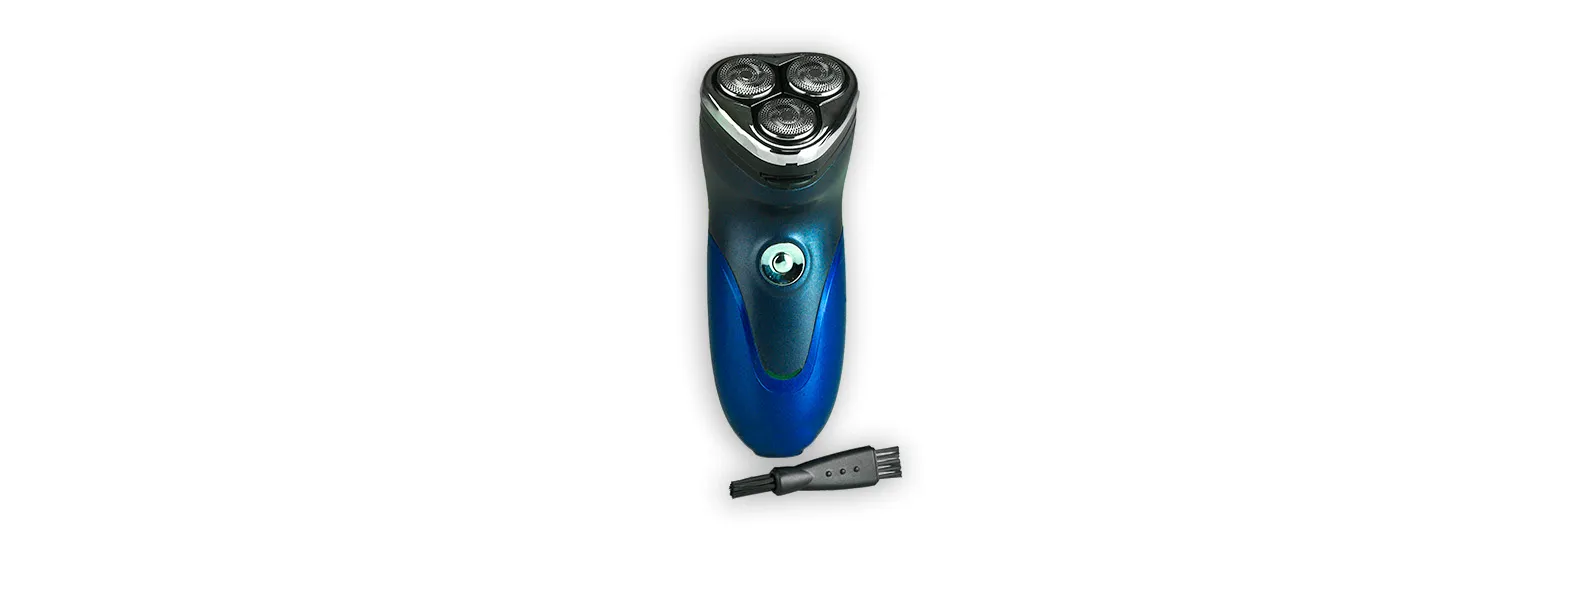 Kit barbeador, depilador e aparador.Composto por depilador e aparador à pilha (Não inclusas) e barbeador à bateria (Carregador 220v).